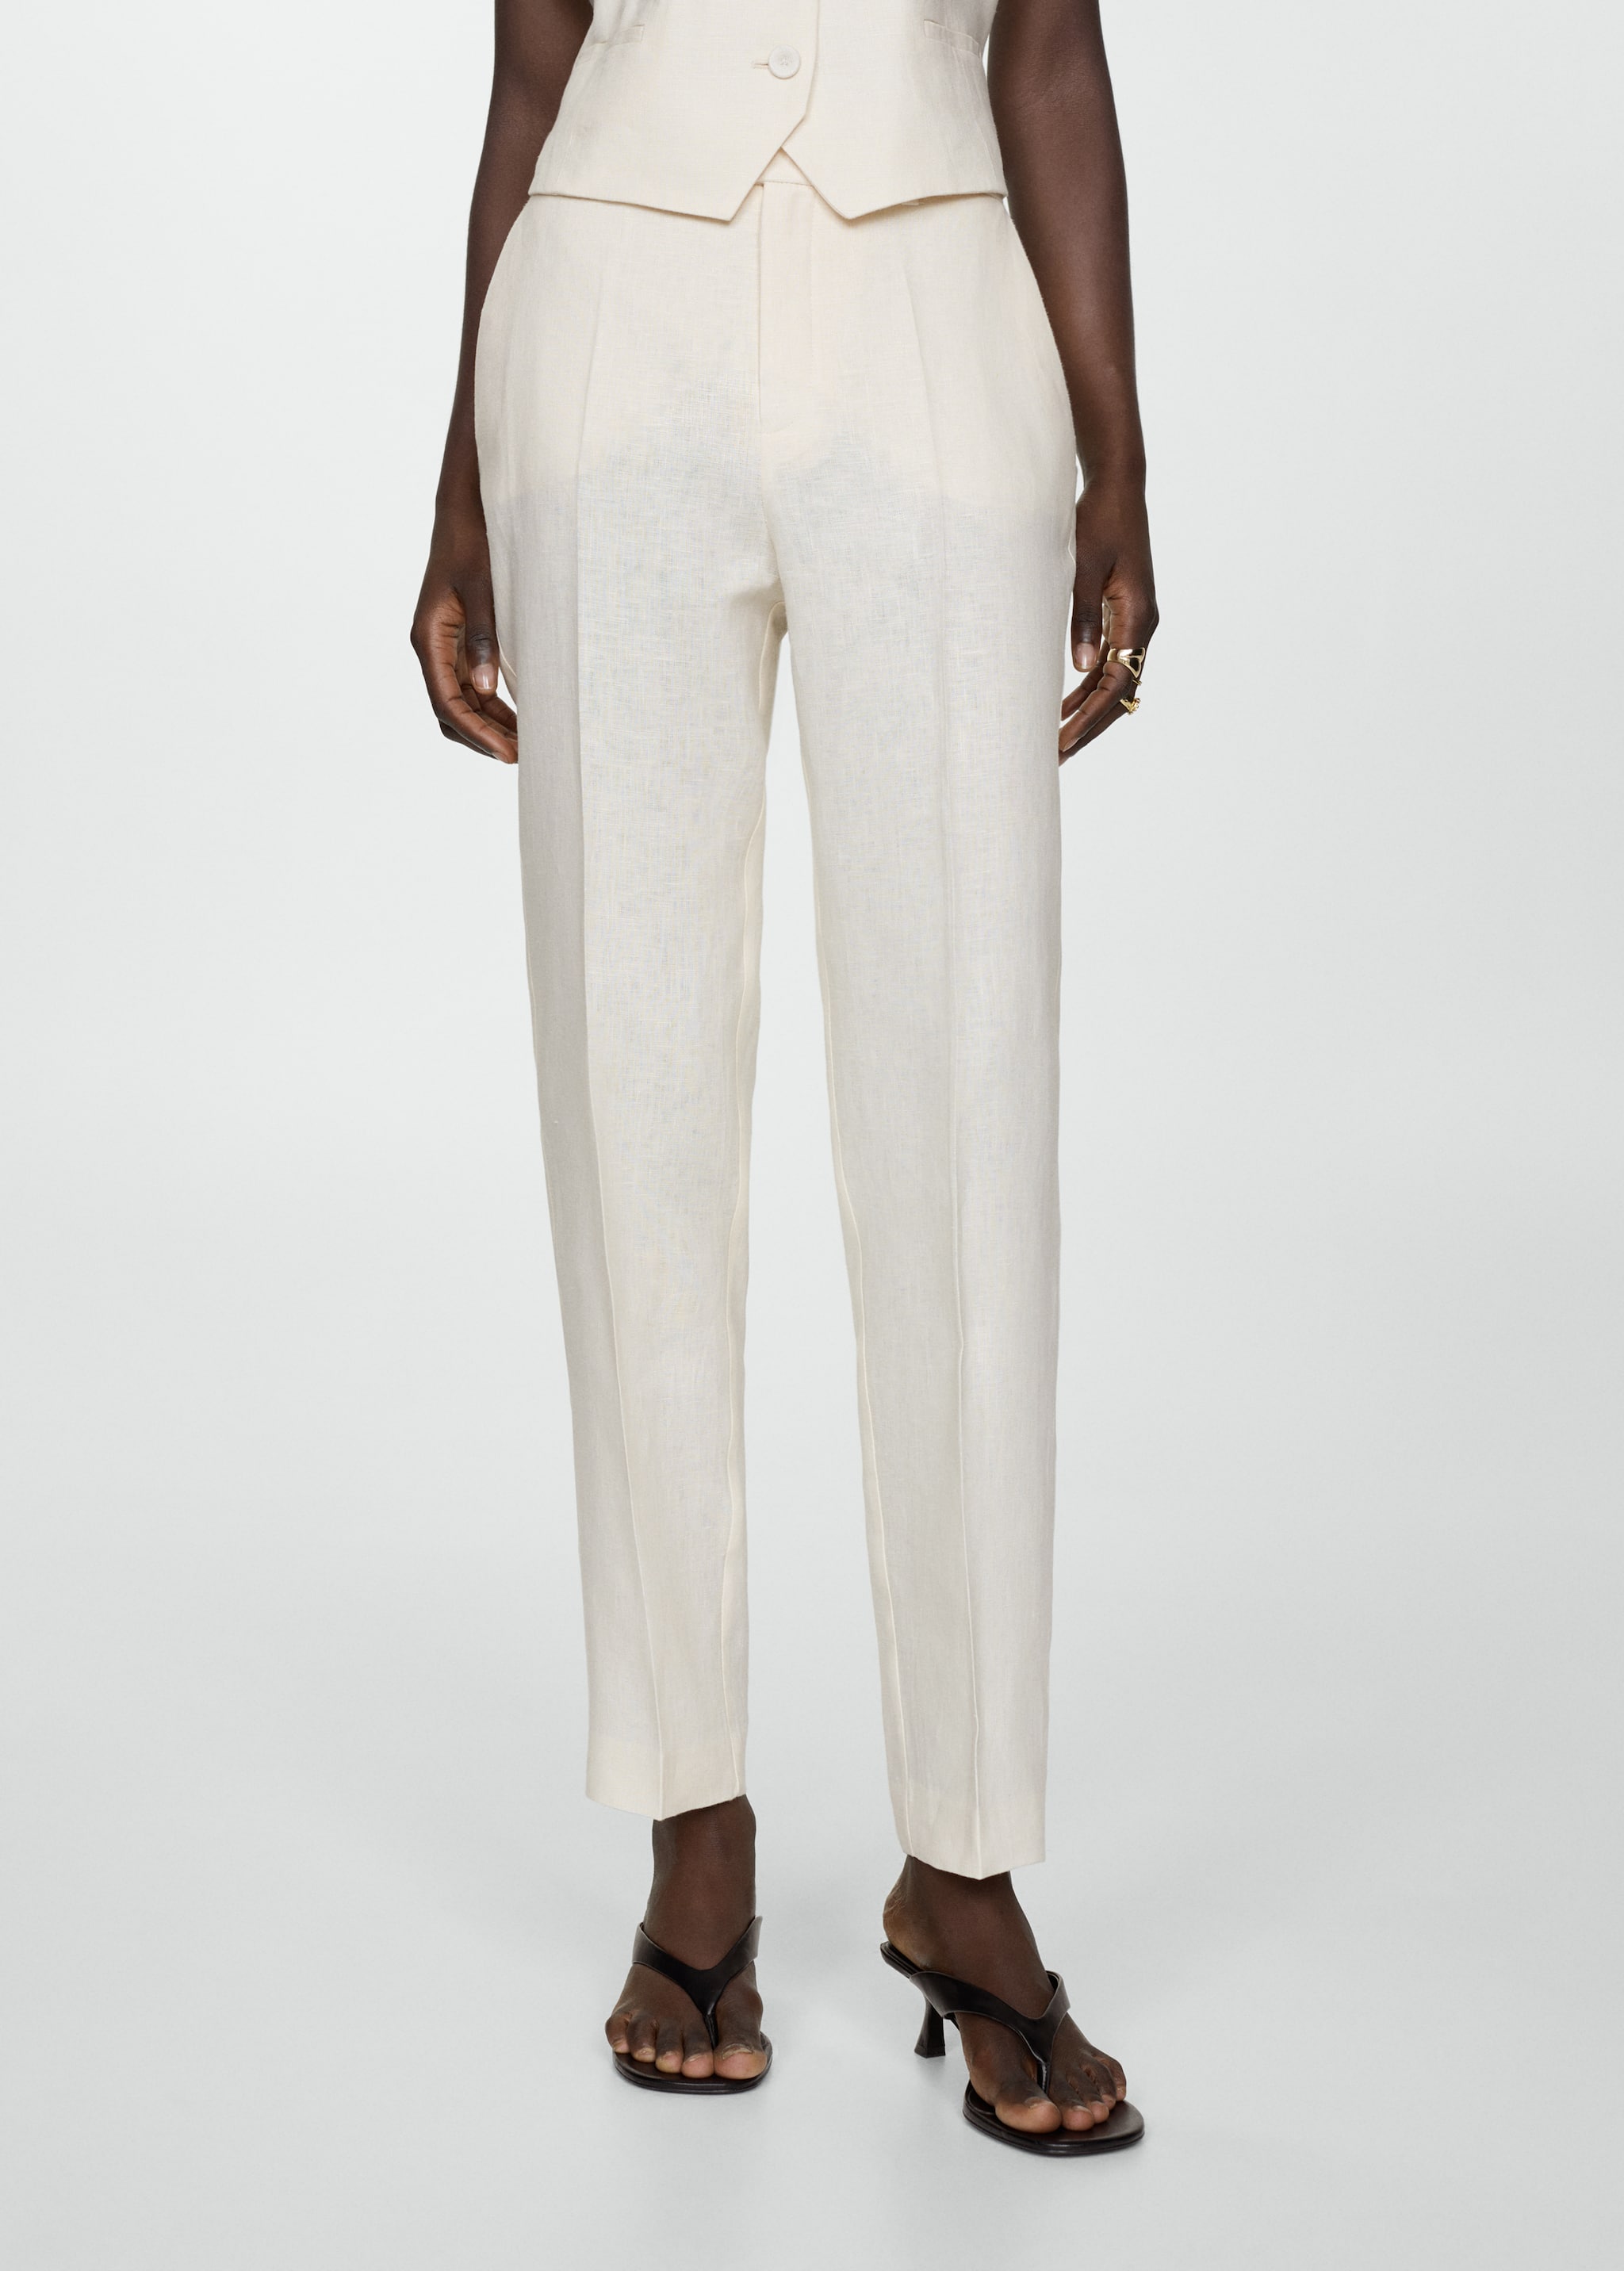 100% linen suit trousers - Medium plane